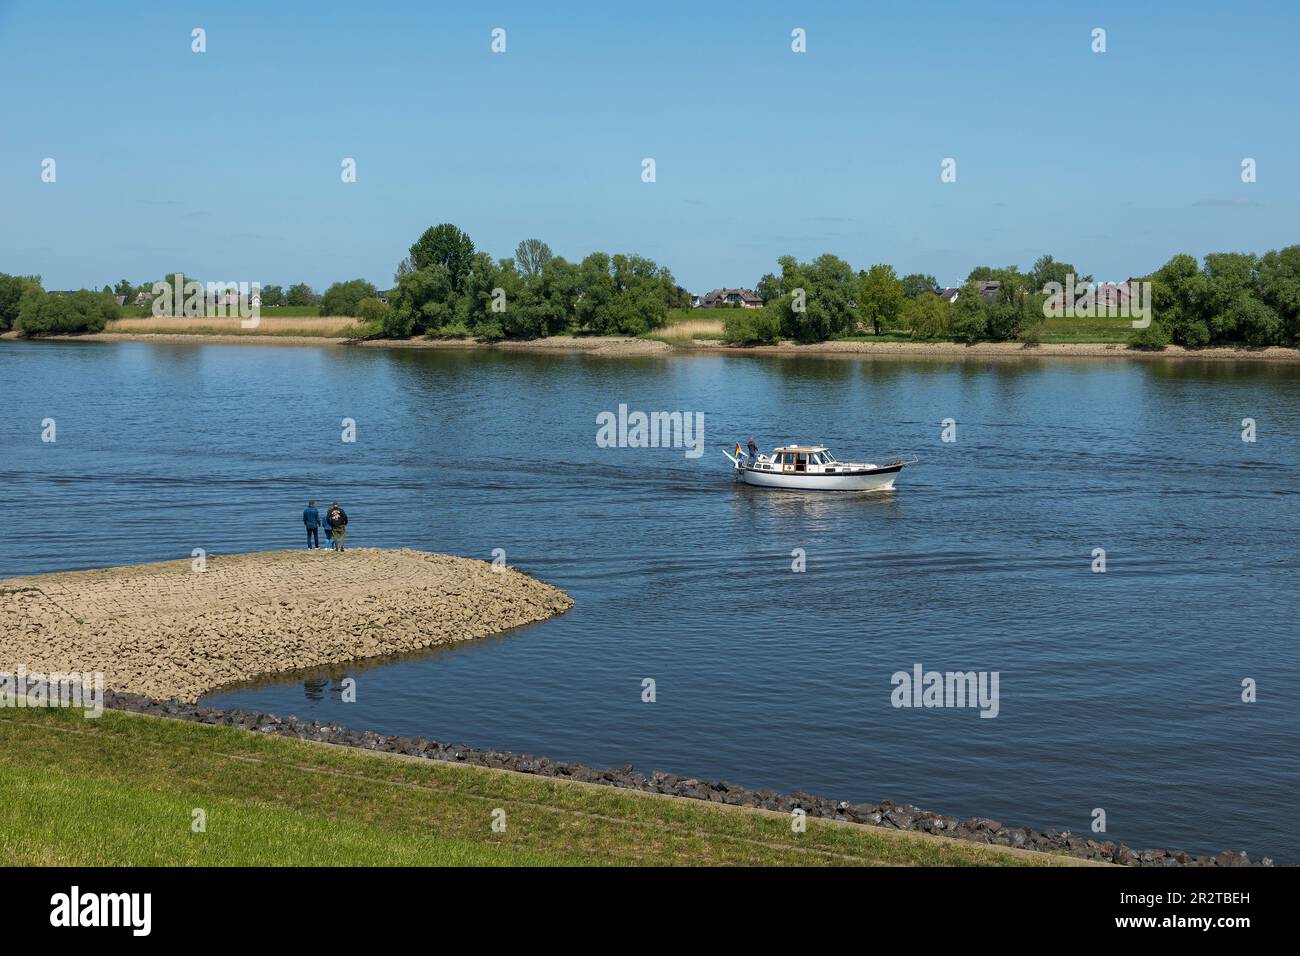 Personnes, bateau, groin, rivière Elbe, Hoopte, Winsen (Luhe), Basse-Saxe, de l'autre côté de la rivière se trouve Zollenspieker, Hambourg, Allemagne Banque D'Images